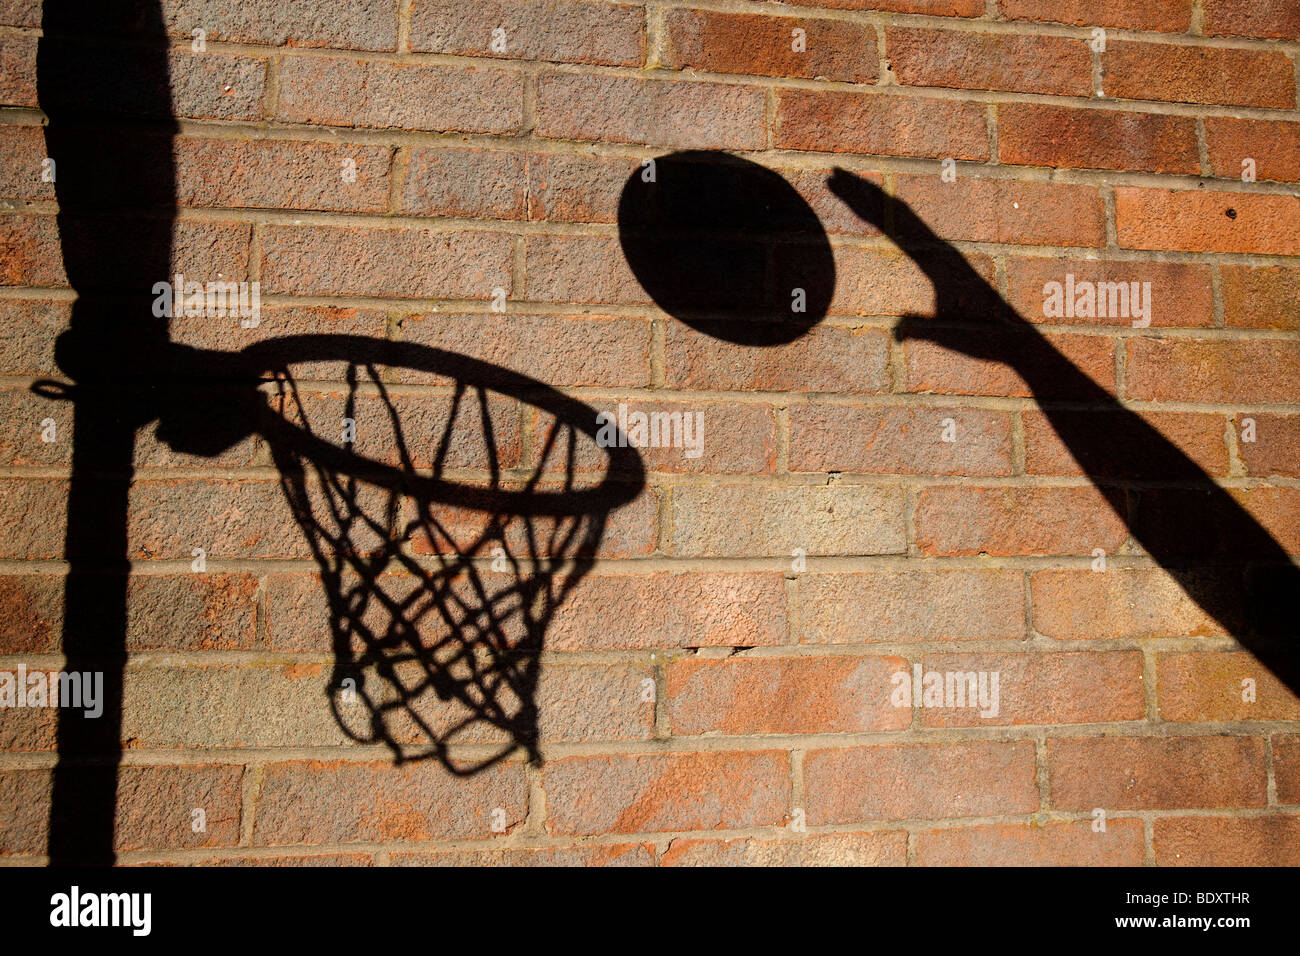 Un terrain de basket ball cerceau et jeter une ombre sur un mur de briques Banque D'Images